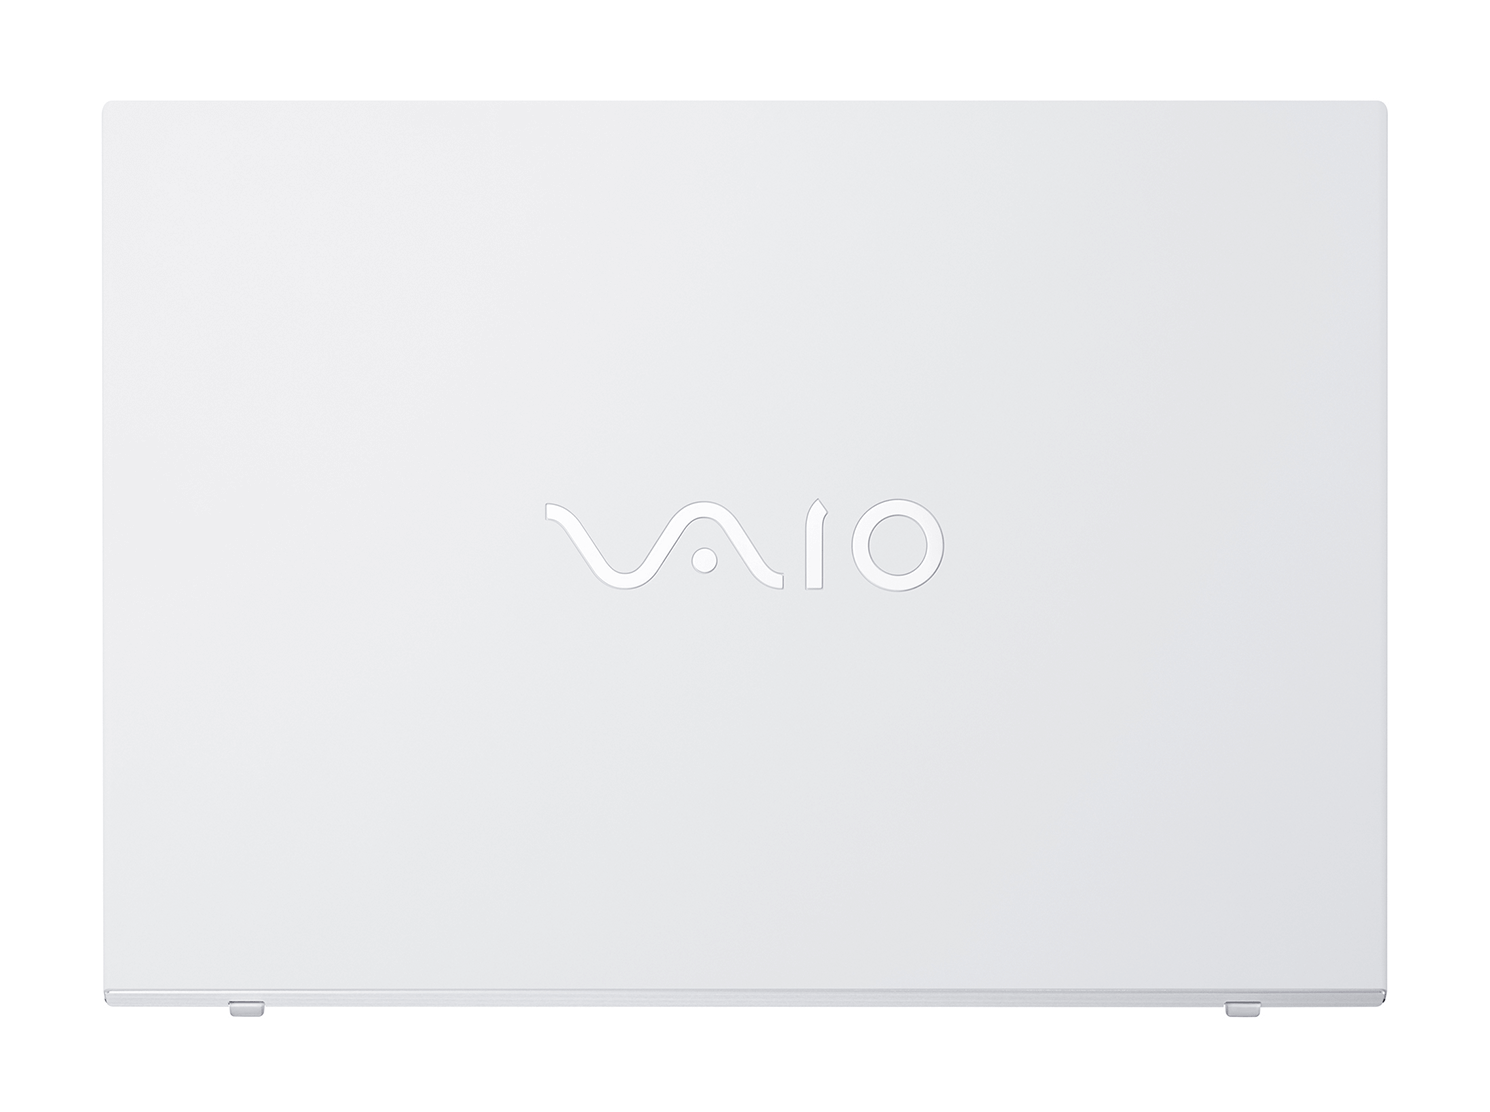 VAIO(バイオ) ノートパソコン S15 ブラック VJS15590111B ［15.6型  Windows11 Home  intel Core i7  メモリ：16GB  SSD：512GB  Office HomeandBusiness  日本語版キーボード  2022年7月モデル］ VJS15590111B